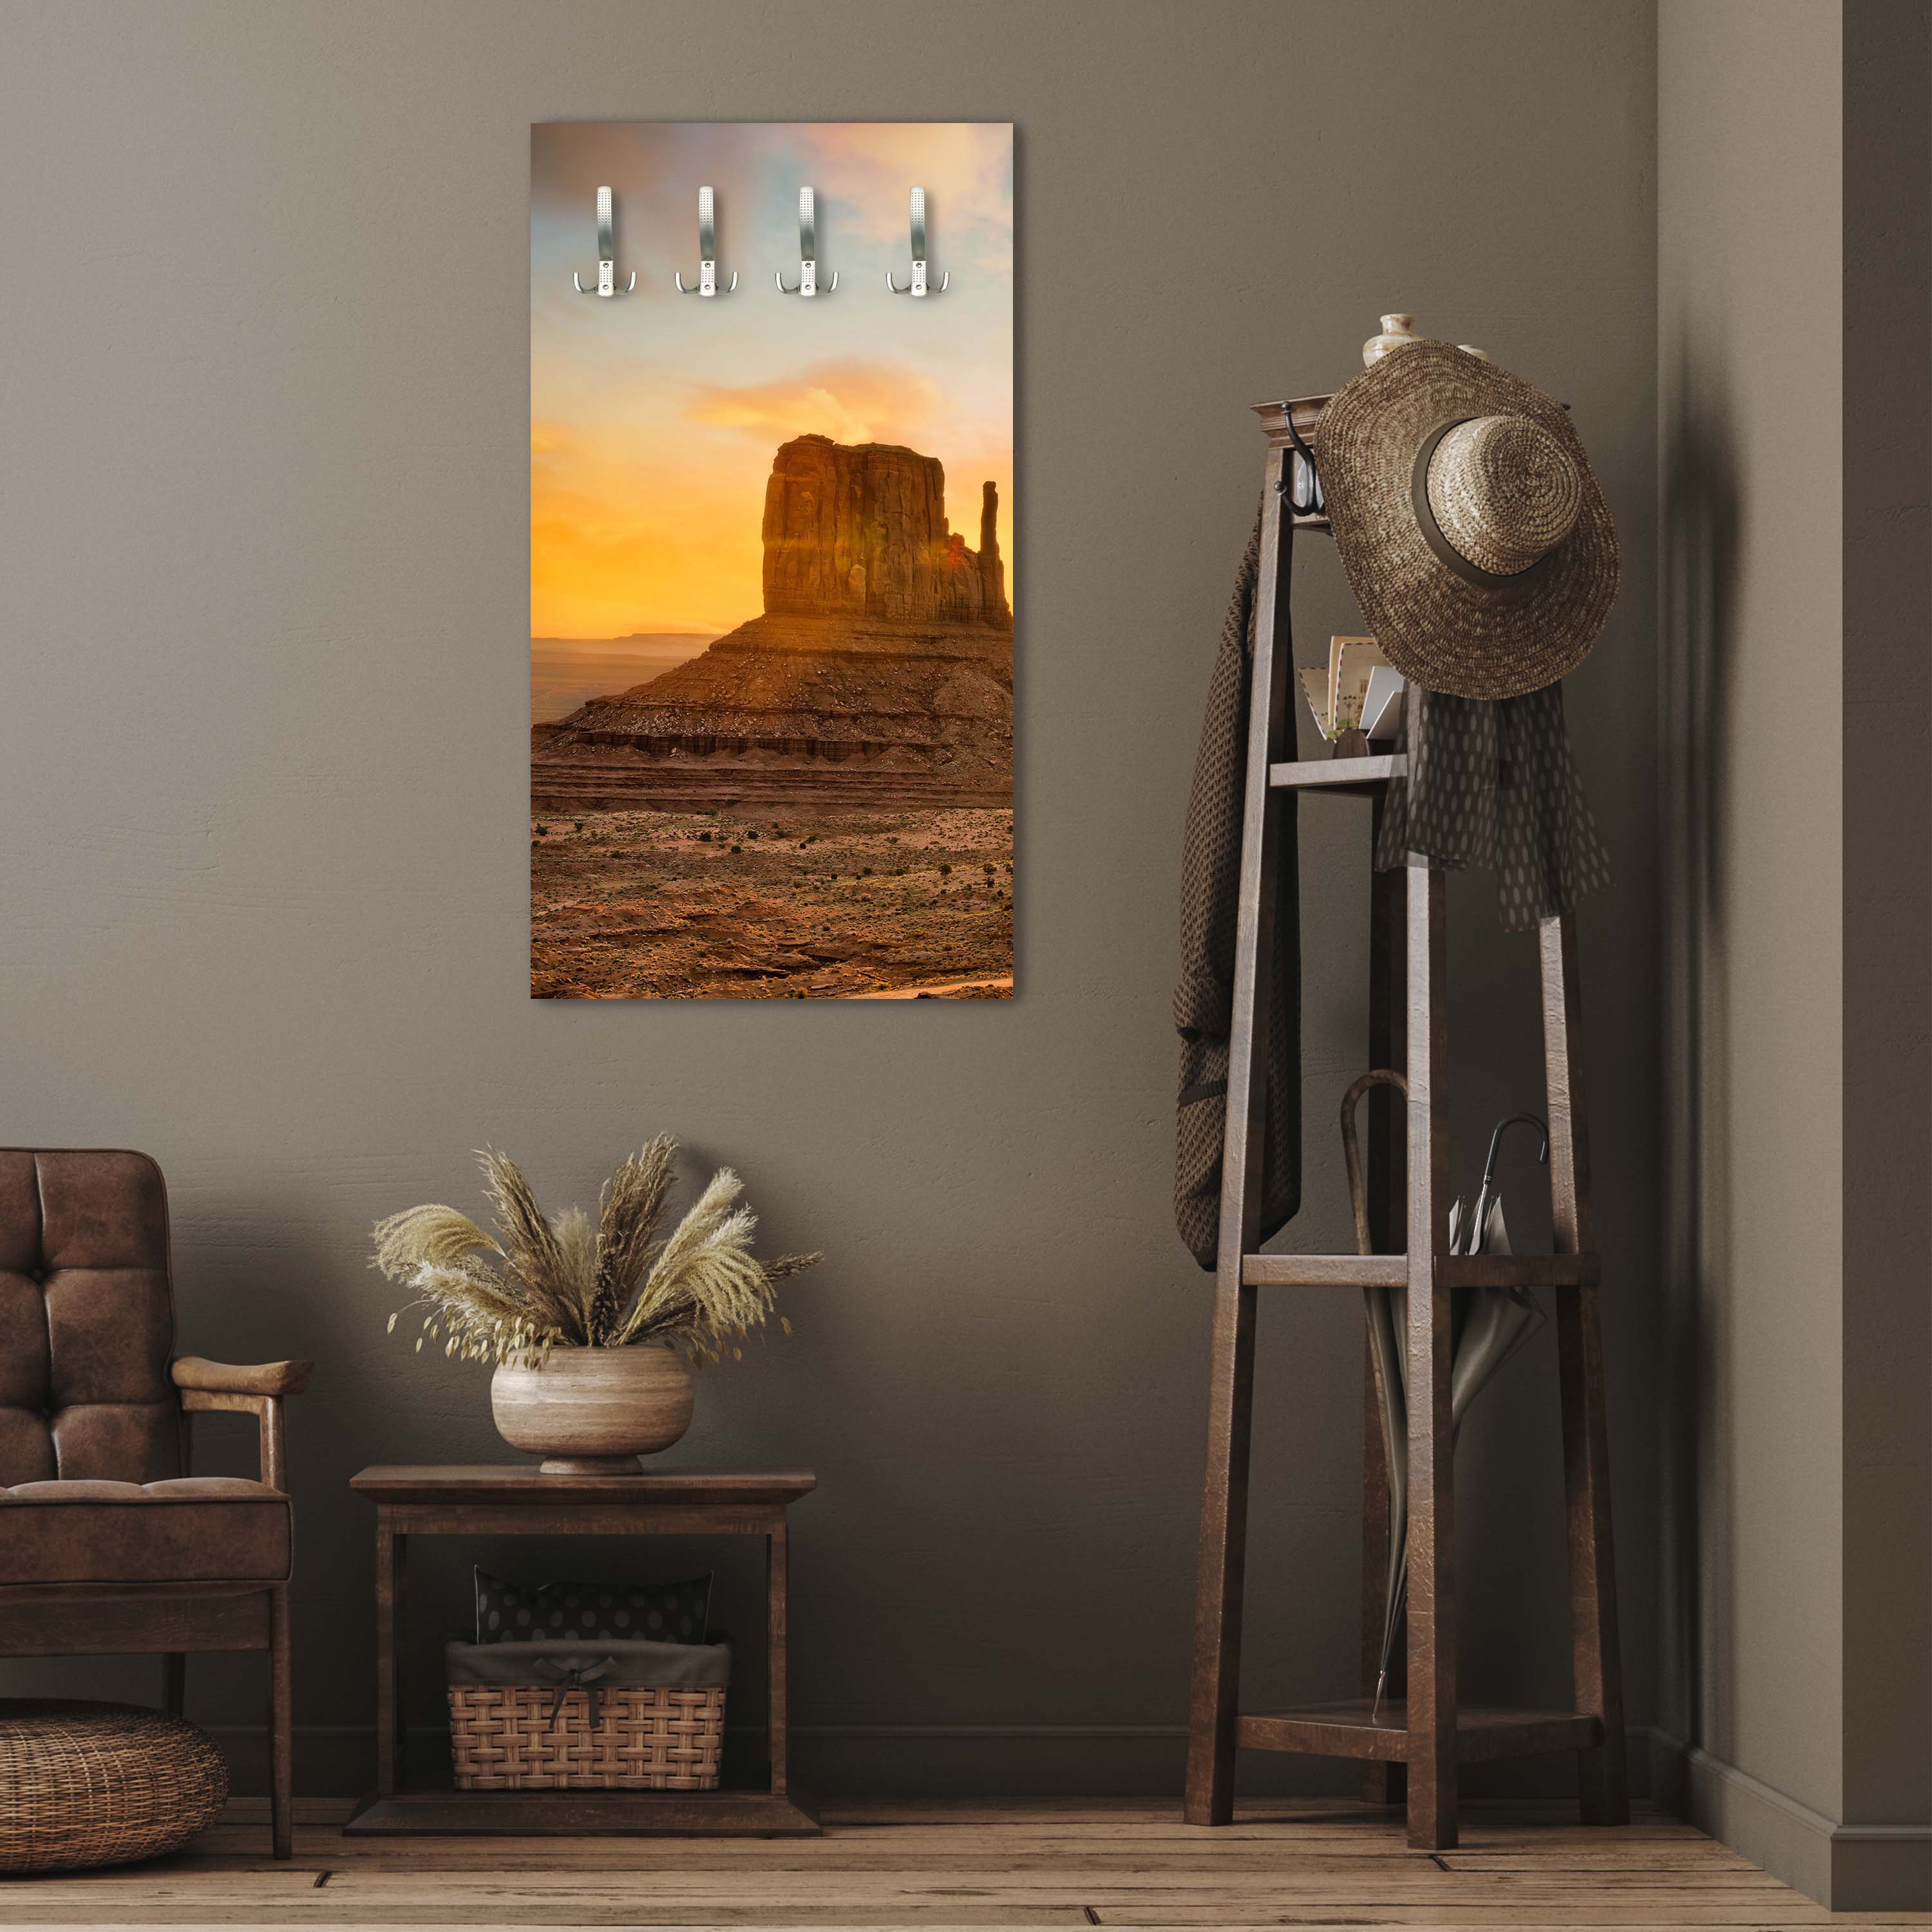 Garderobe Monument Valley M0287 entdecken - Bild 2